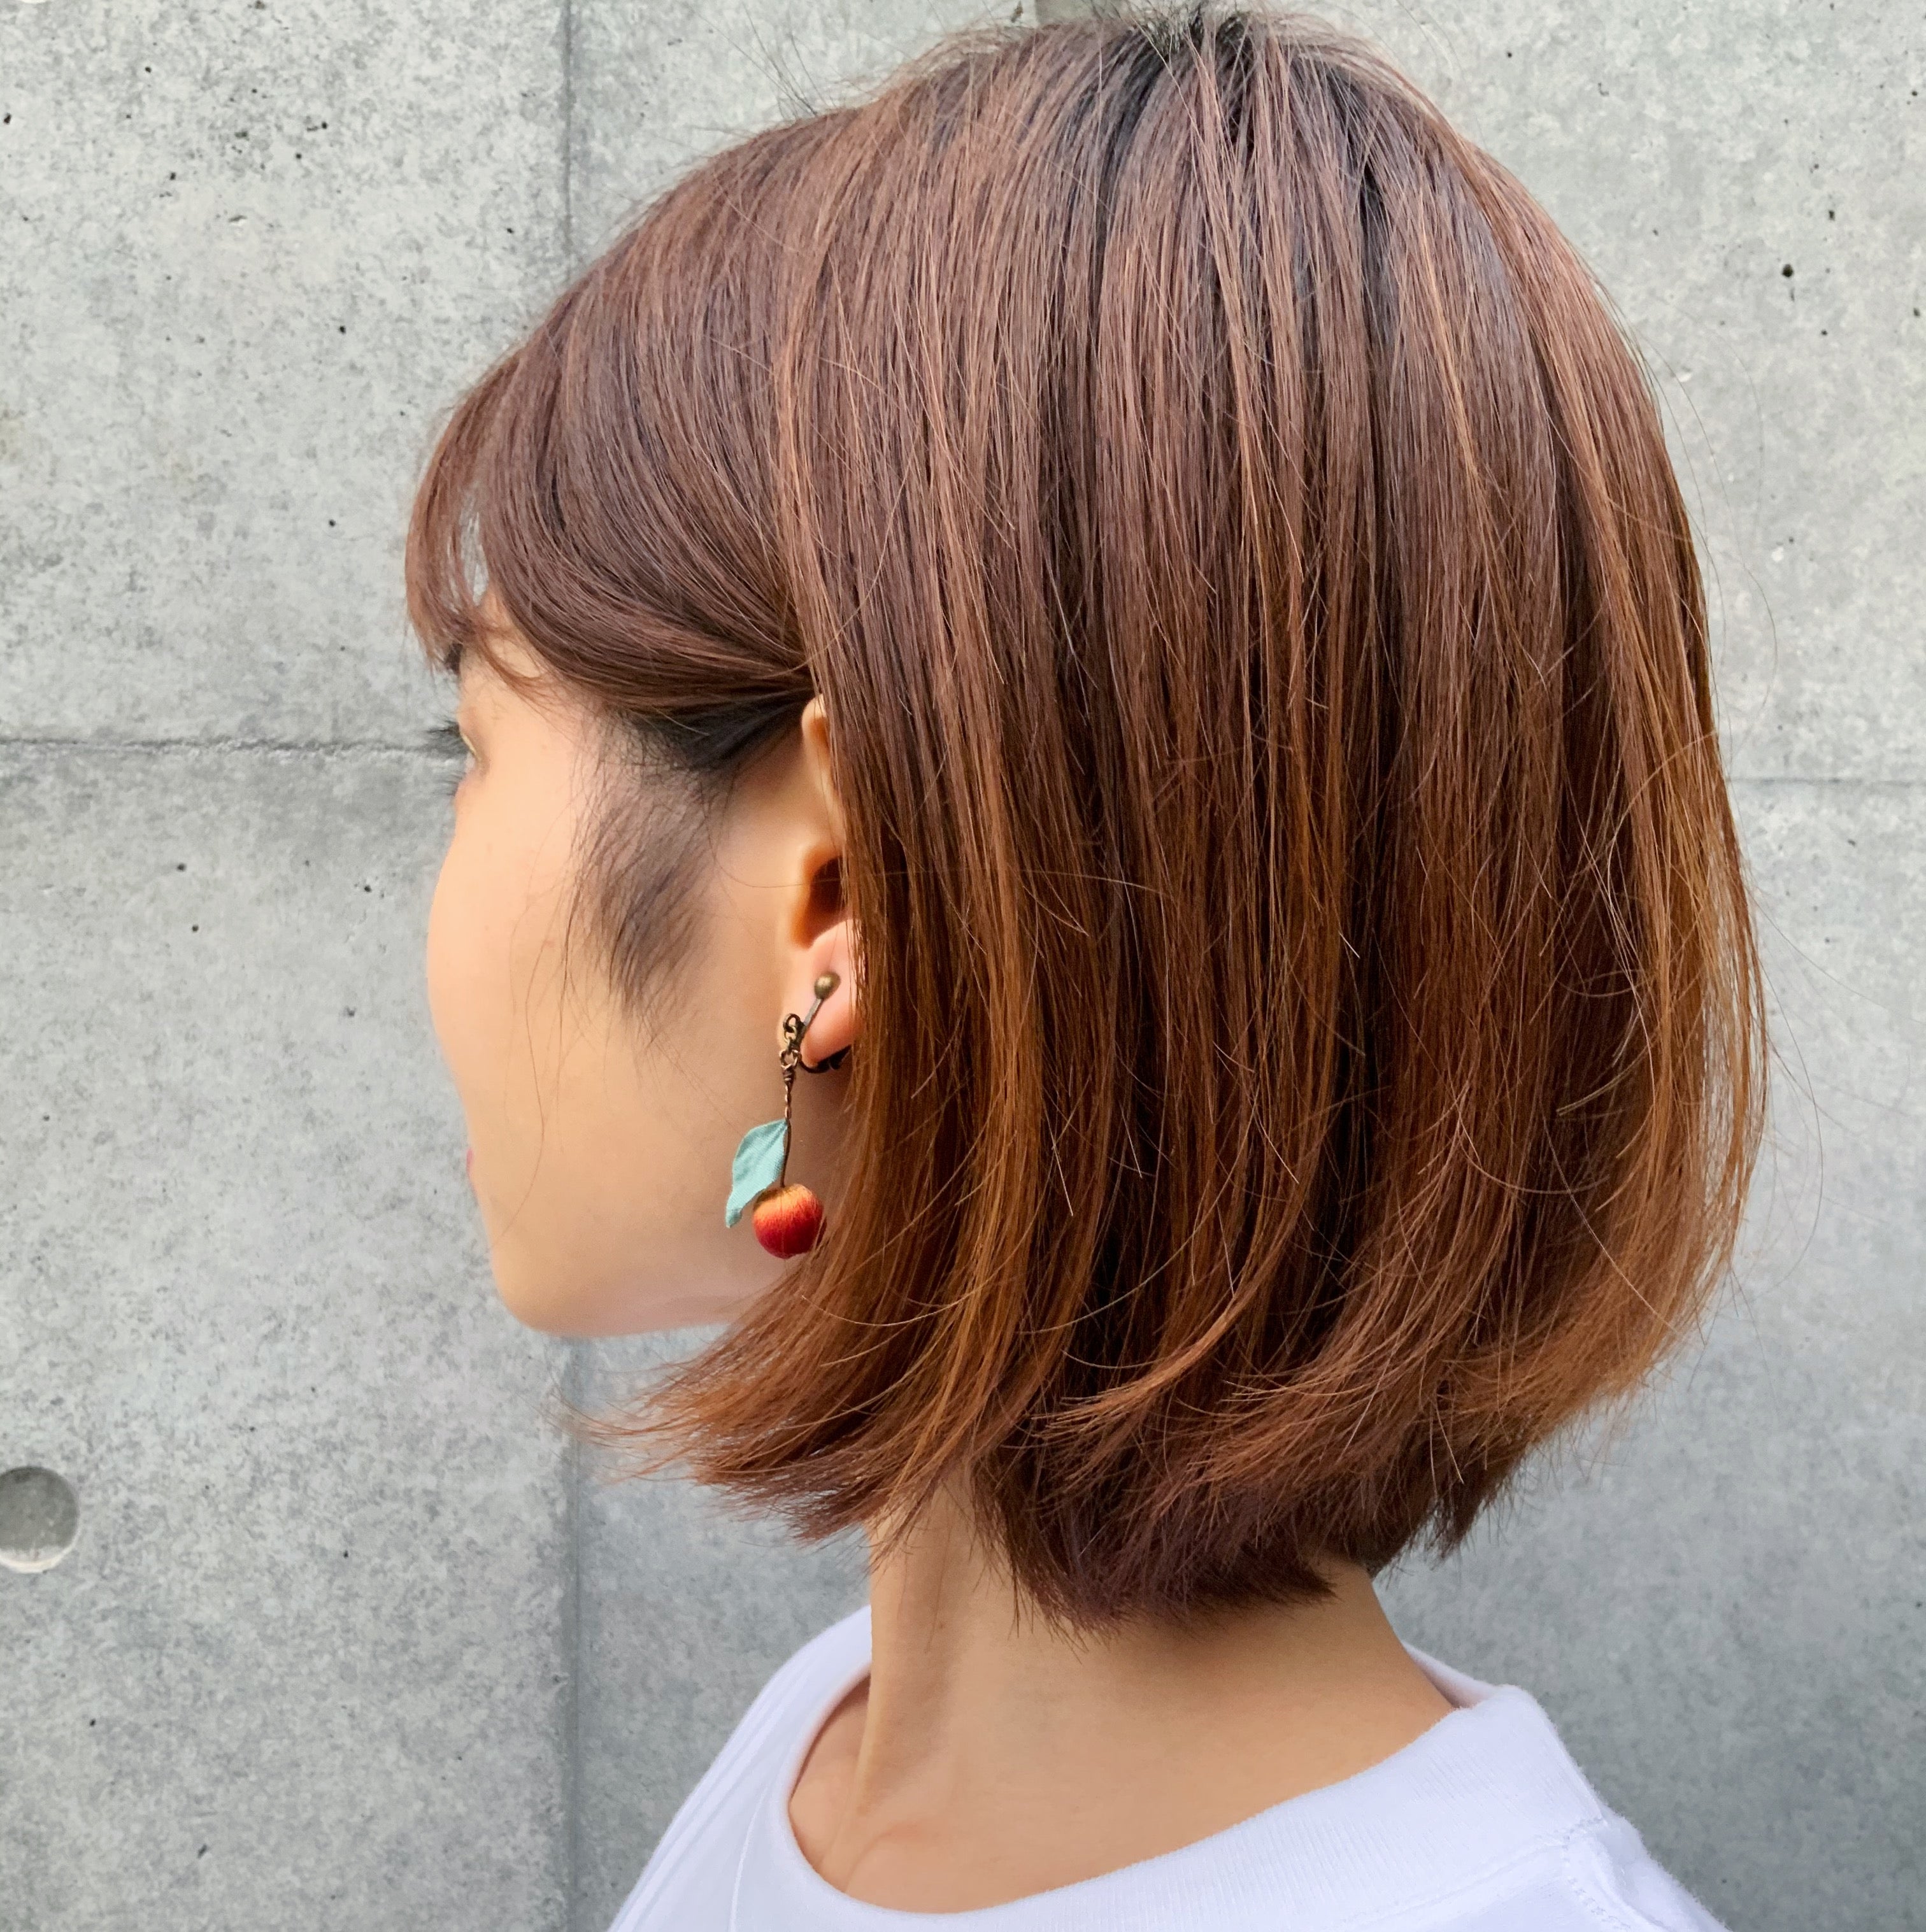 Kahon 苹果公主 clip-on earrings